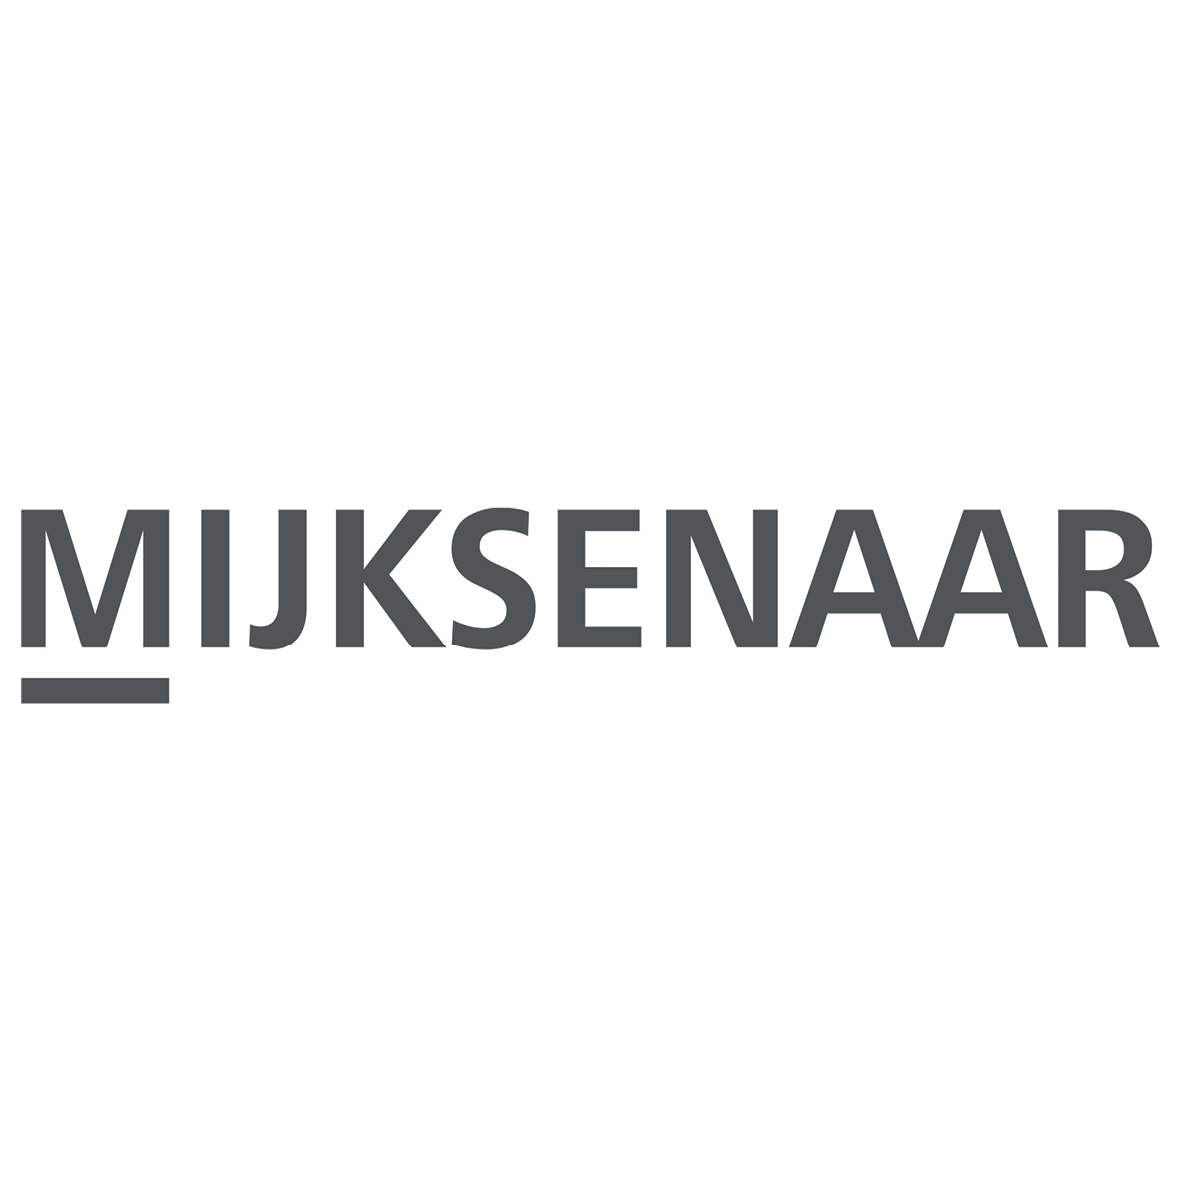 Profile picture of Mijksenaar